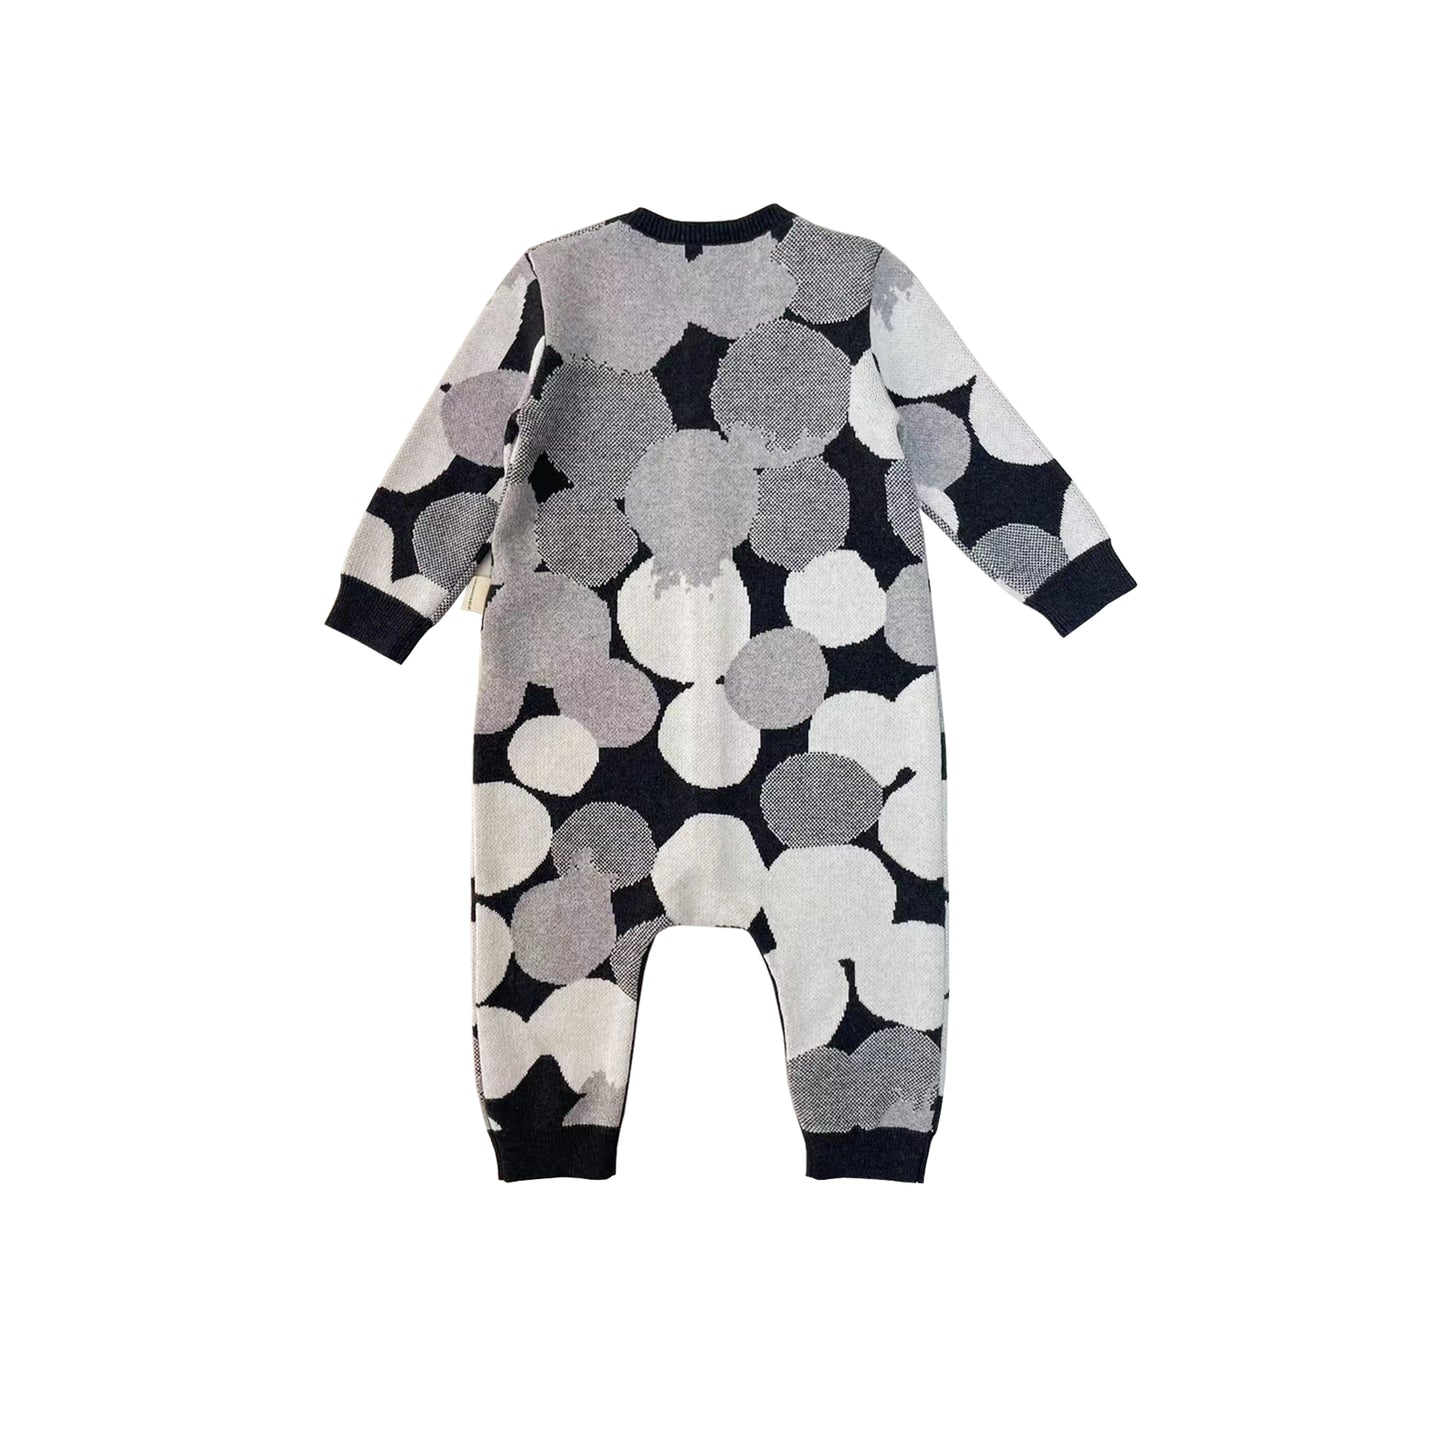 嬰兒衣服 - 灰色波波圖案提花長袖連身衣